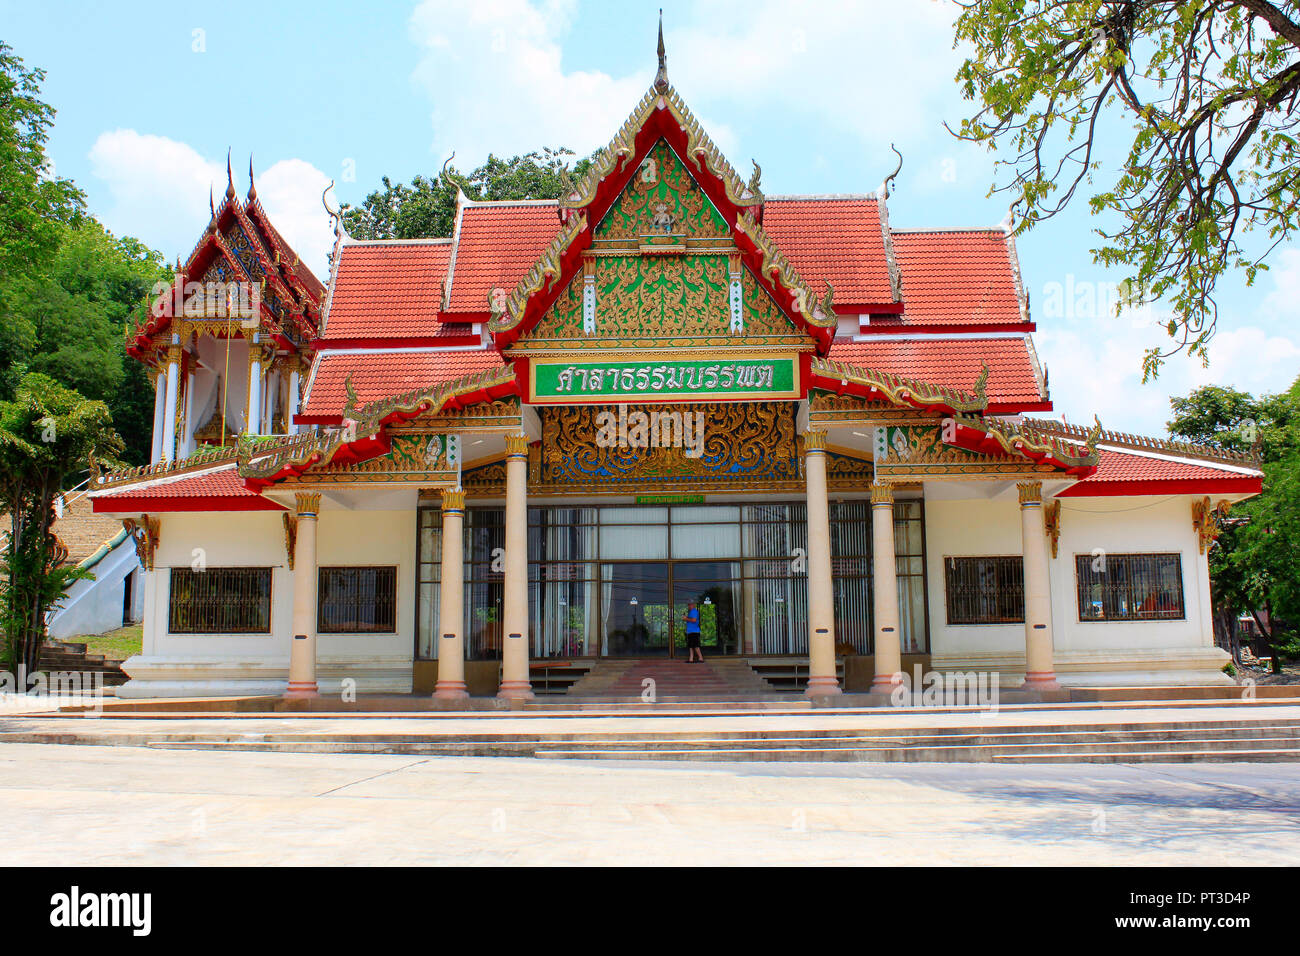 Monastère bouddhiste à Ban Bung Sam Phan, Nok, Thaïlande Phetchabun. Banque D'Images